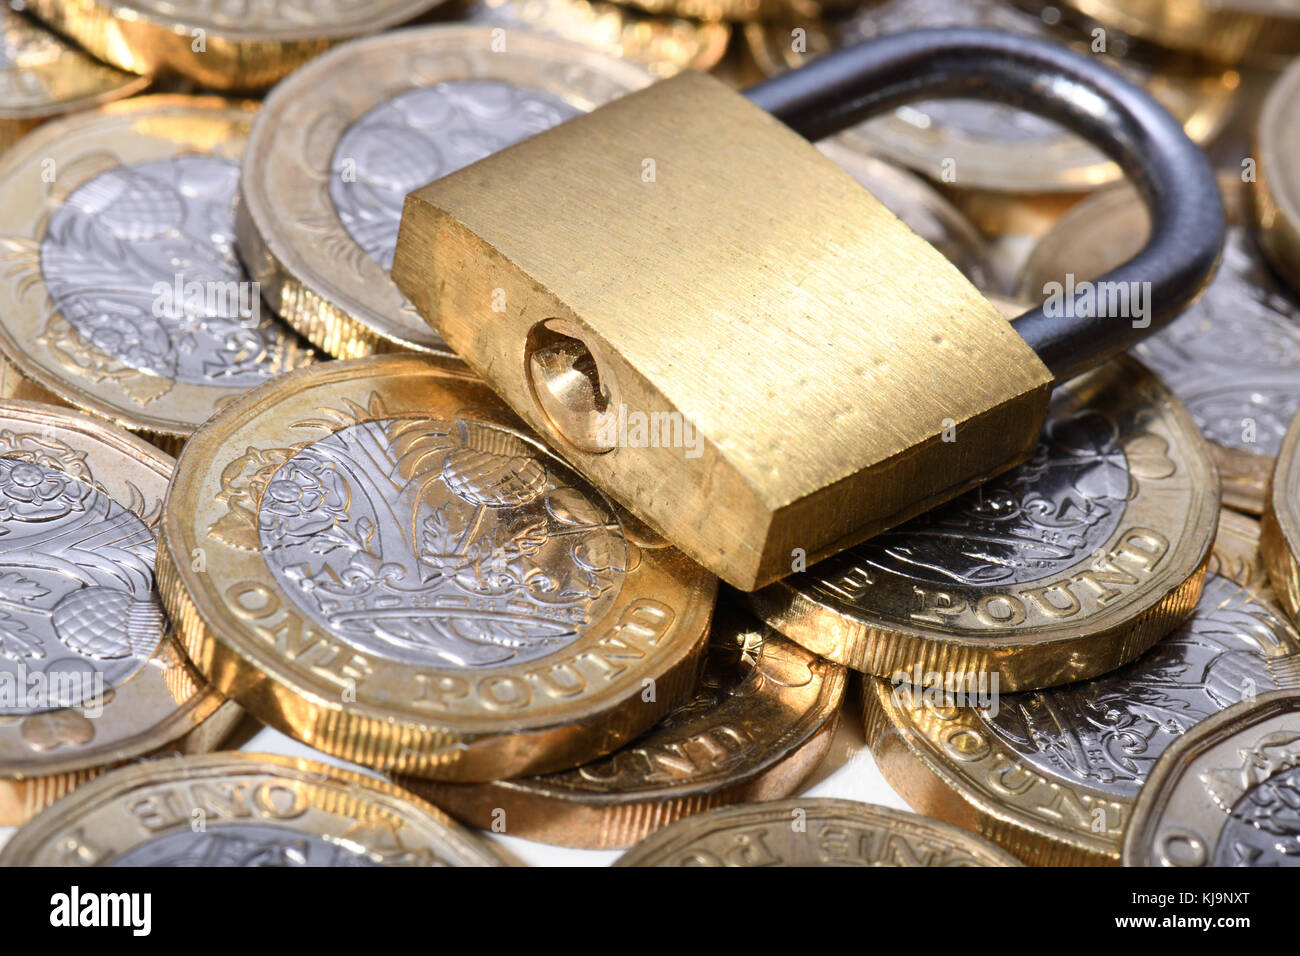 Cadenas fermé sur des pièces d'or Banque D'Images